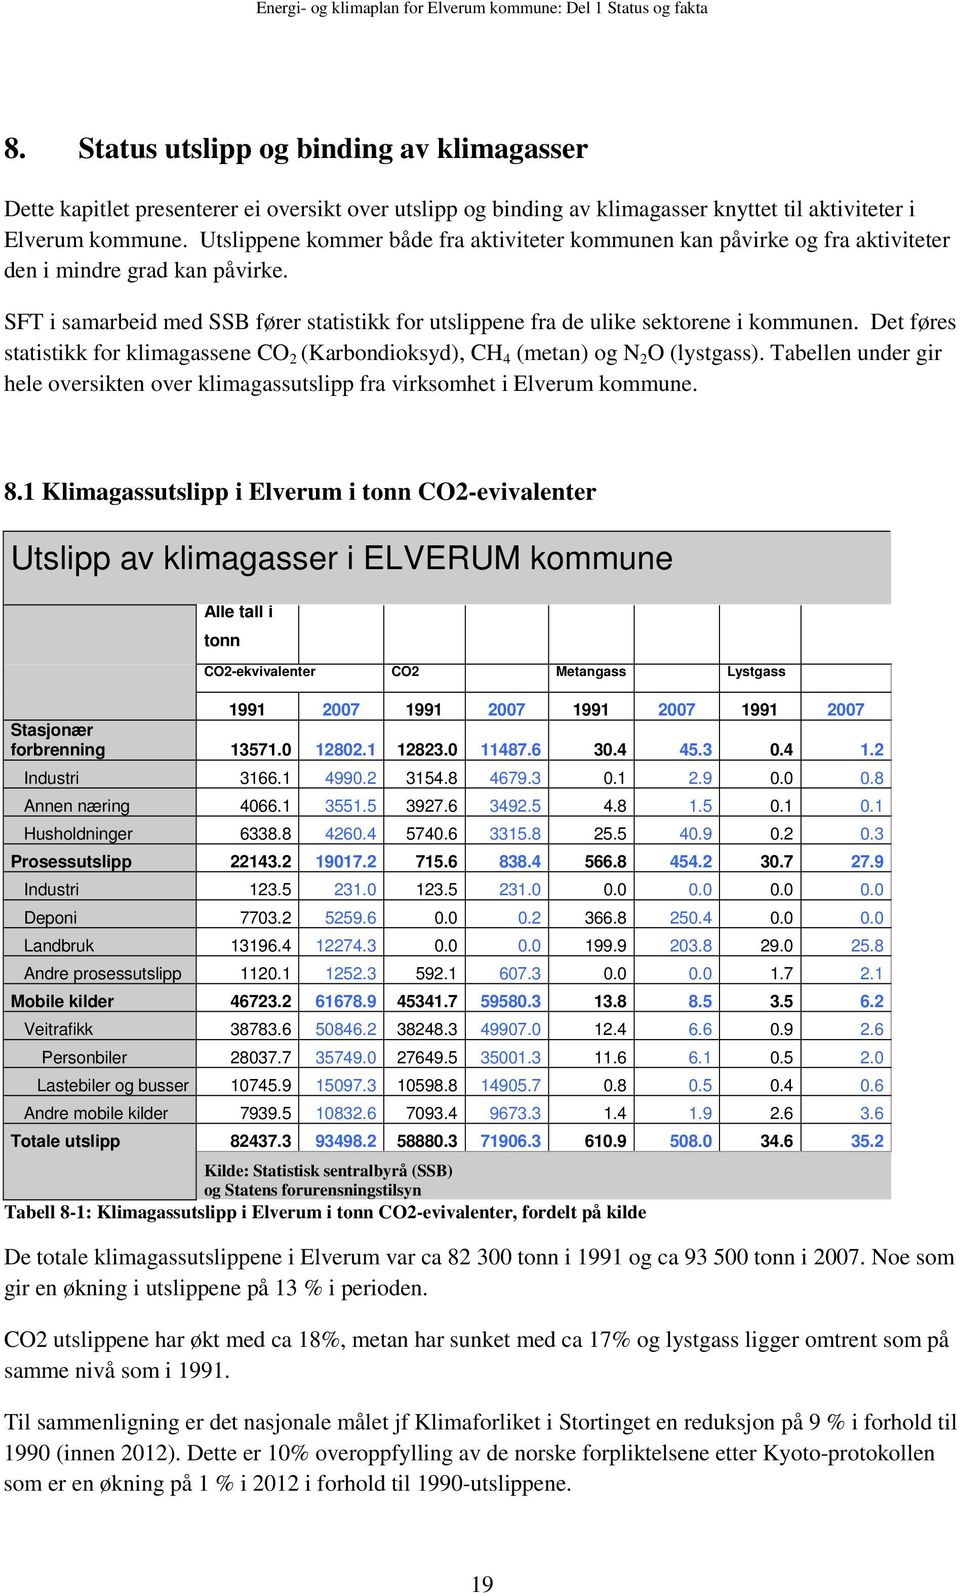 Det føres statistikk fr klimagassene CO 2 (Karbndiksyd), CH 4 (metan) g N 2 O (lystgass). Tabellen under gir hele versikten ver klimagassutslipp fra virksmhet i Elverum kmmune. 8.